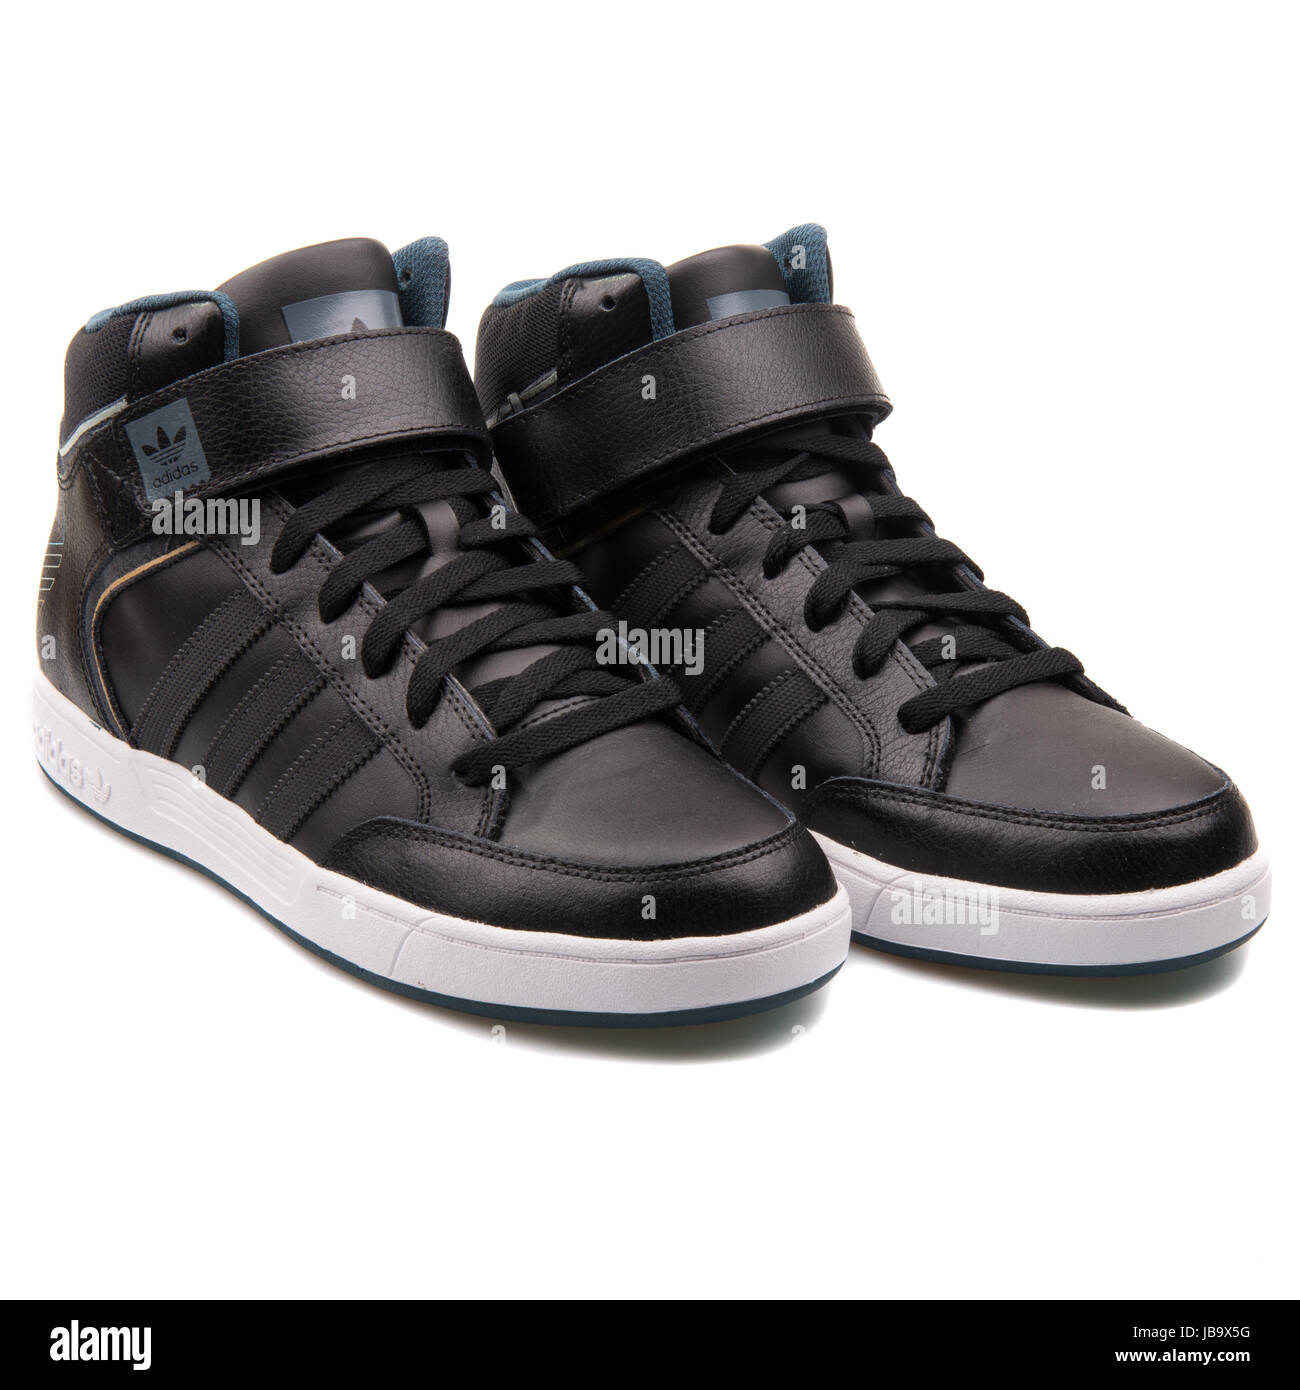 Adidas Varial mediados de cuero negro zapatillas de baloncesto D68664 de - Alamy